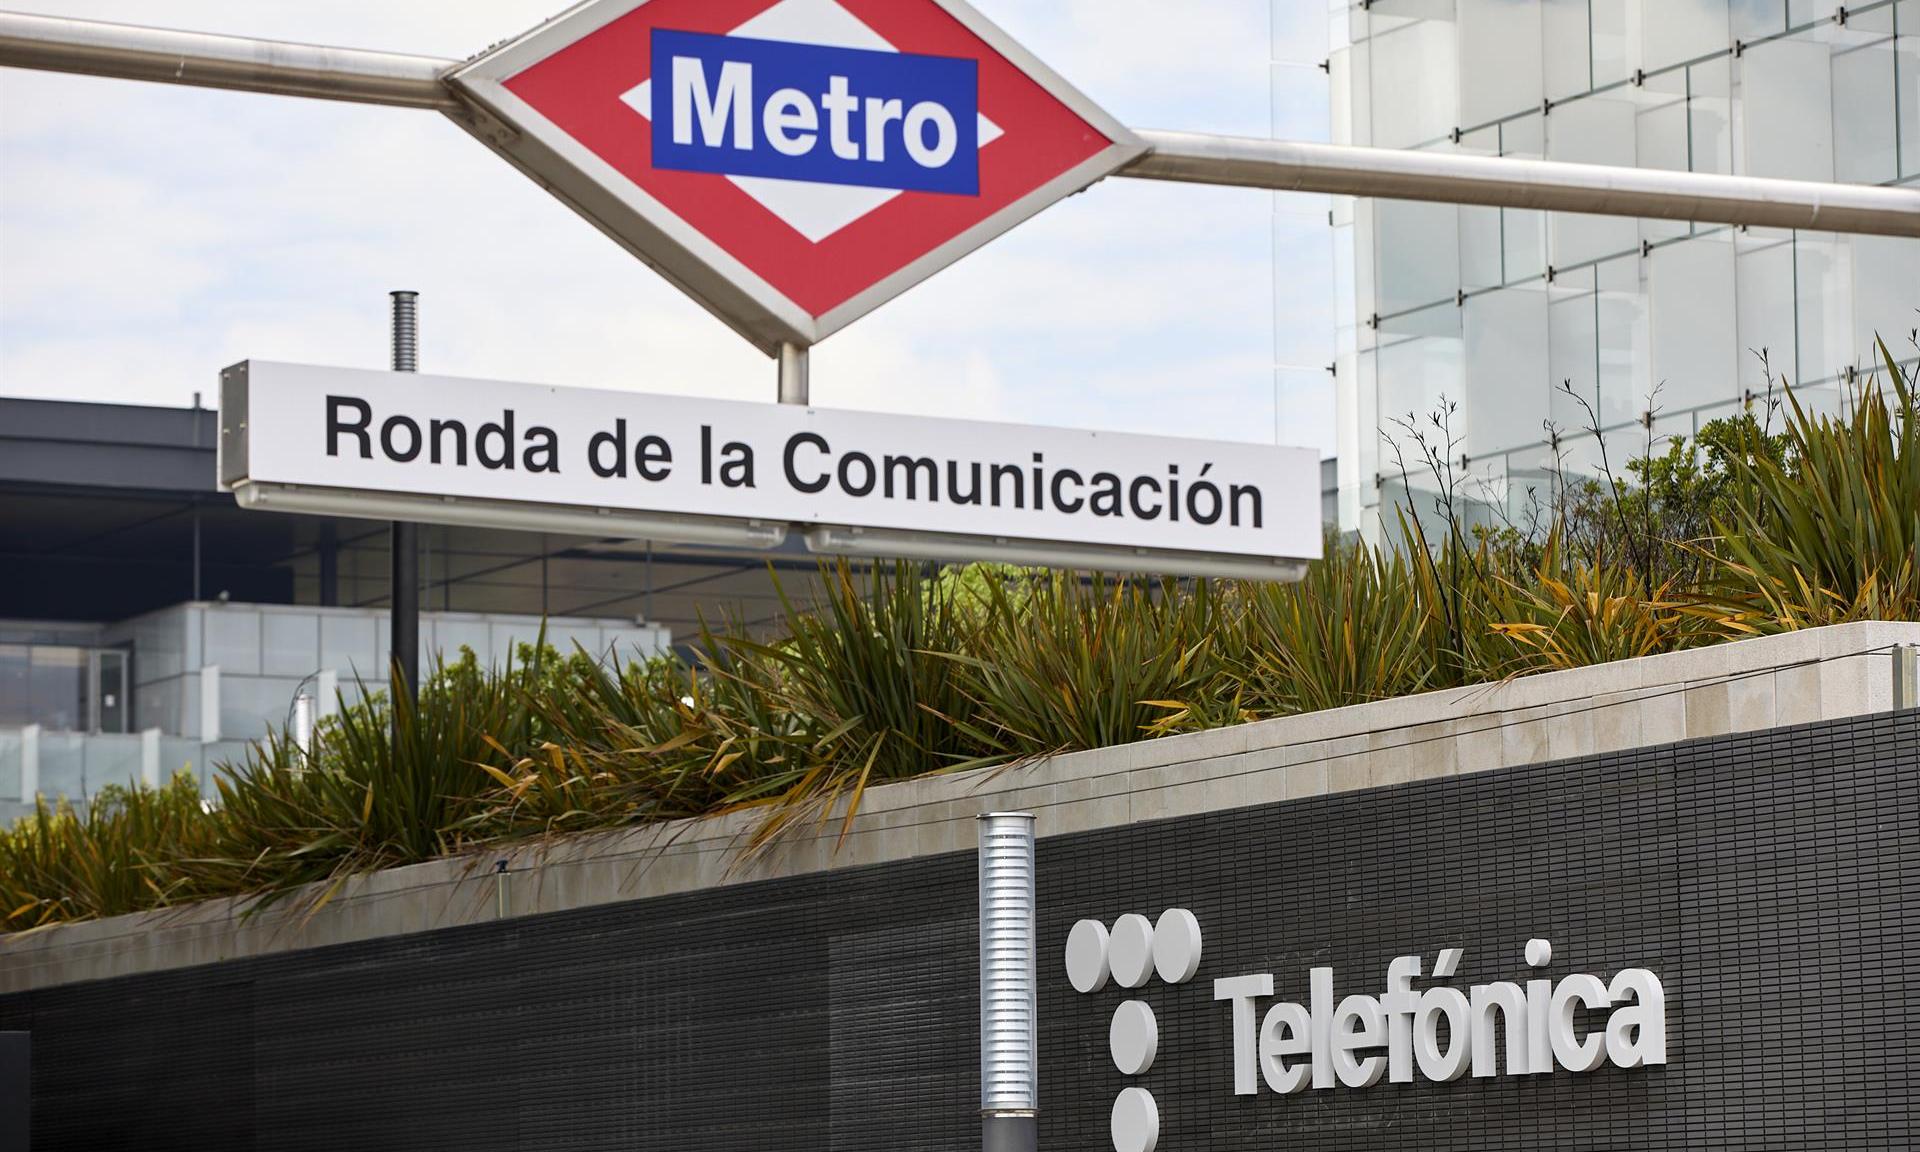 MásMóvil, Orange, Vodafone y Telefónica reinstauran el teletrabajo hasta enero ante el alza del covid